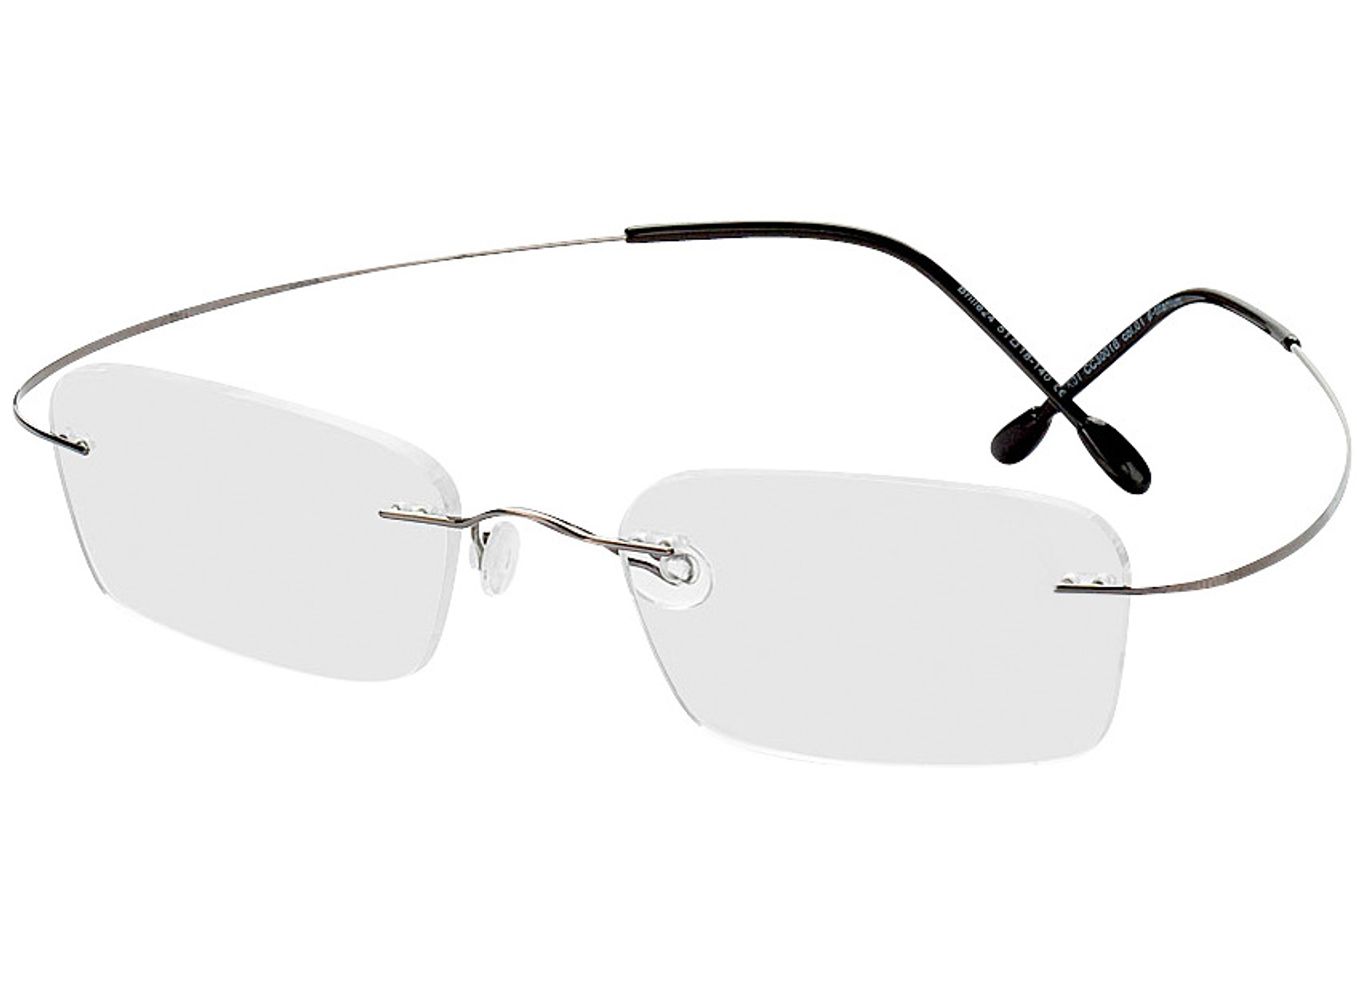 Mackay - grau Arbeitsplatzbrille, Randlos, Rechteckig von Brille24 Collection